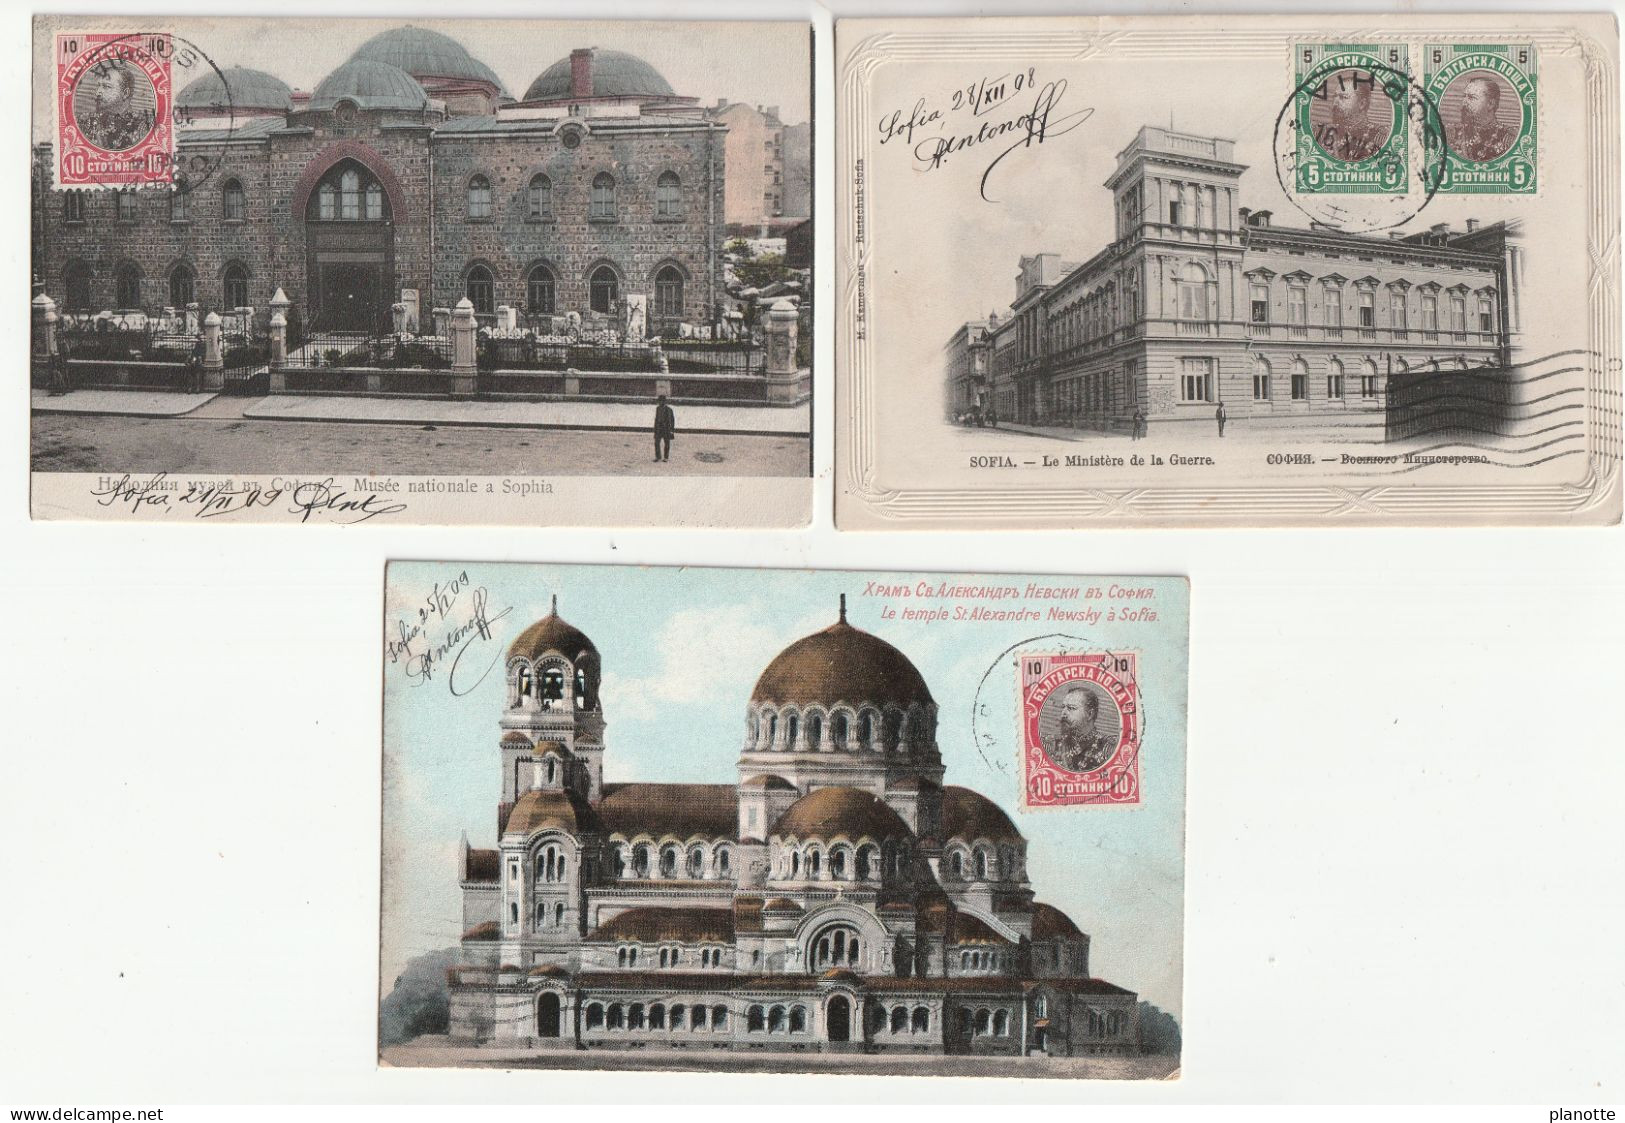 BULGARIA -  SOFIA - 3 Old Pc 1900/10s - Ministere De La Guerre / Musée Nationale / Temple St Alexandre Newsky - Bulgaria